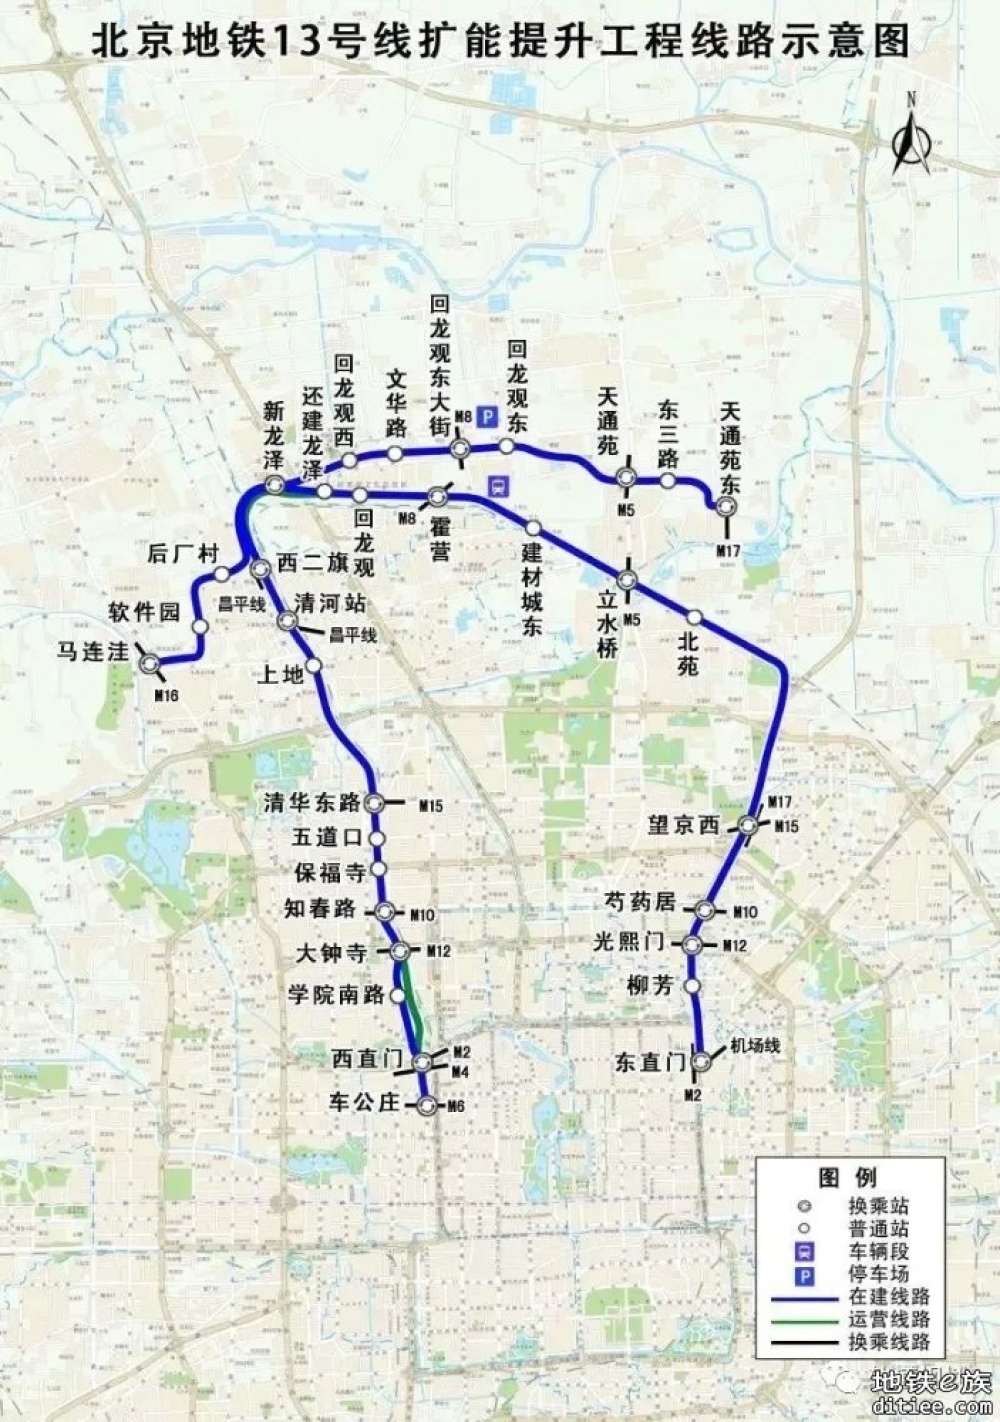 北京地铁13号线后厂村站主体结构封顶